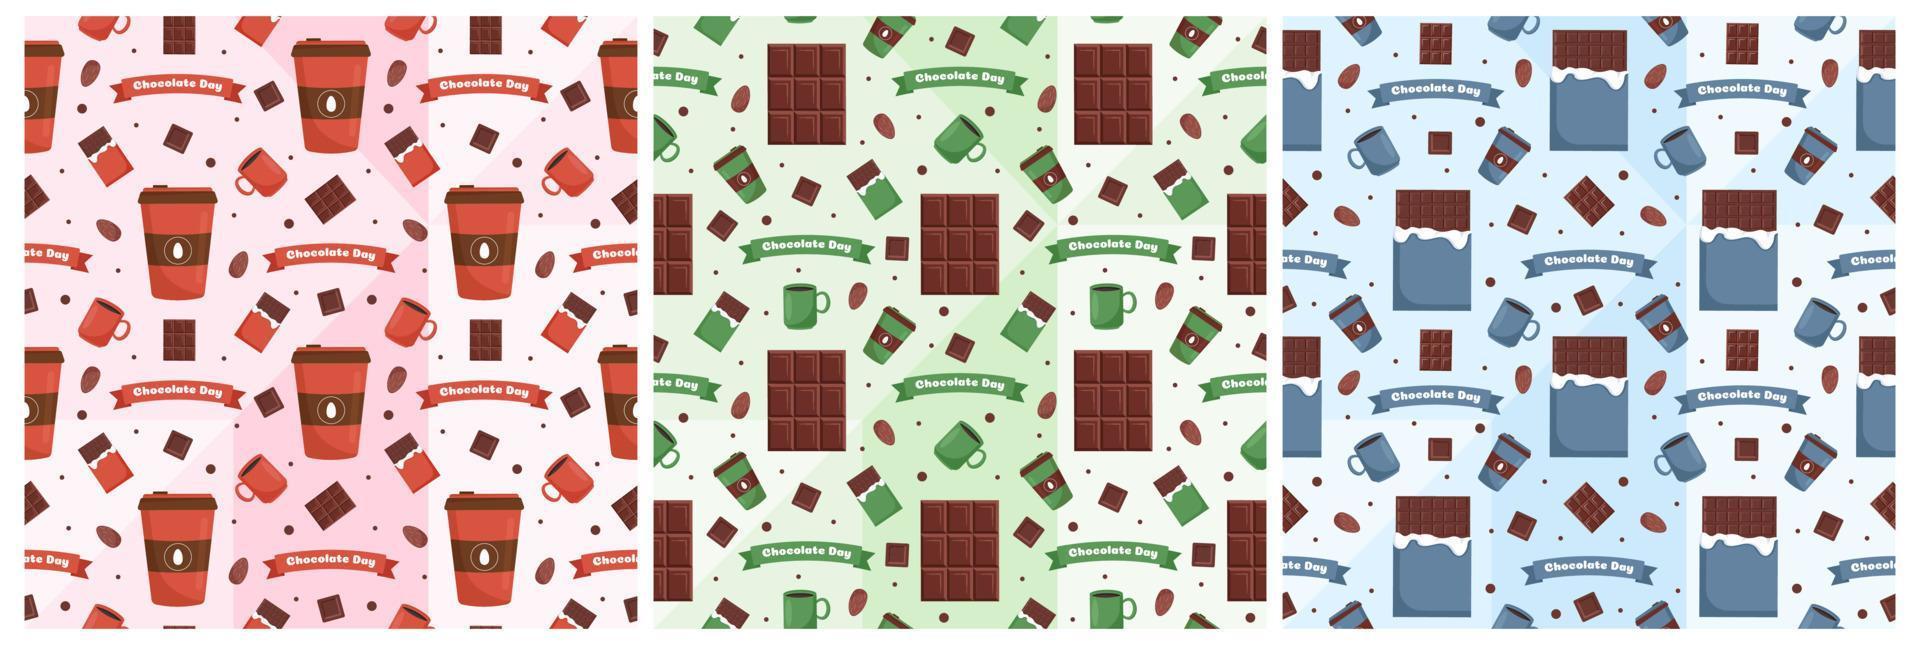 conjunto de diseño de patrones sin fisuras de chocolate con decoración de choco en plantilla ilustración de dibujos animados dibujados a mano vector